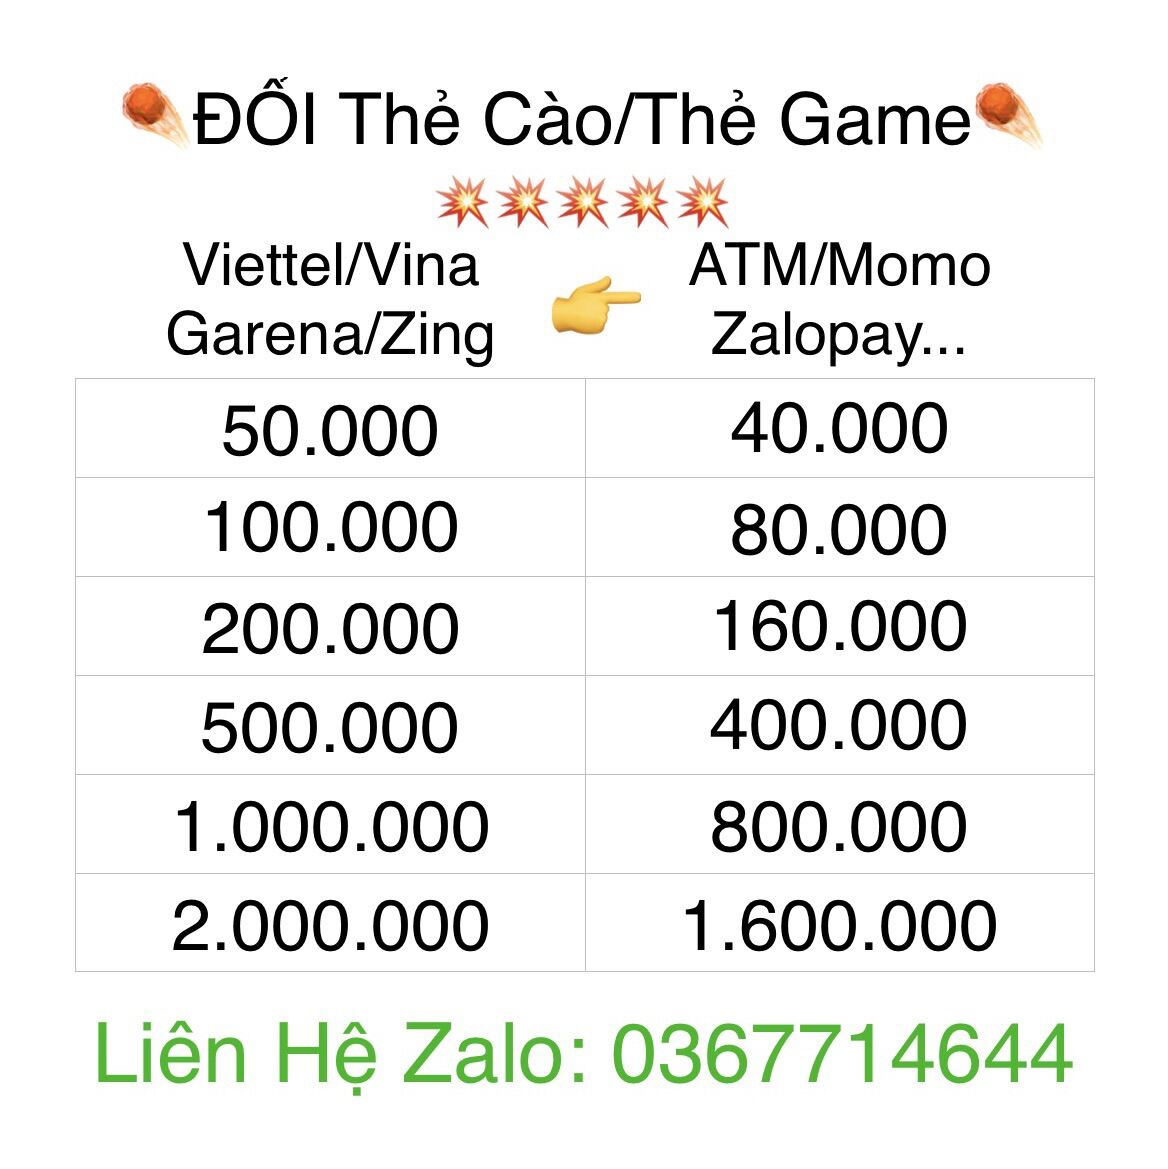 Thẻ Viettel,Vina,Garena,Zing,Vcoin 100,200,500,1tr...(Đổi thẻ cào,thẻ game sang Atm,momo...Nhanh gọn uy tín Liên hệ Zalo 0367714644)